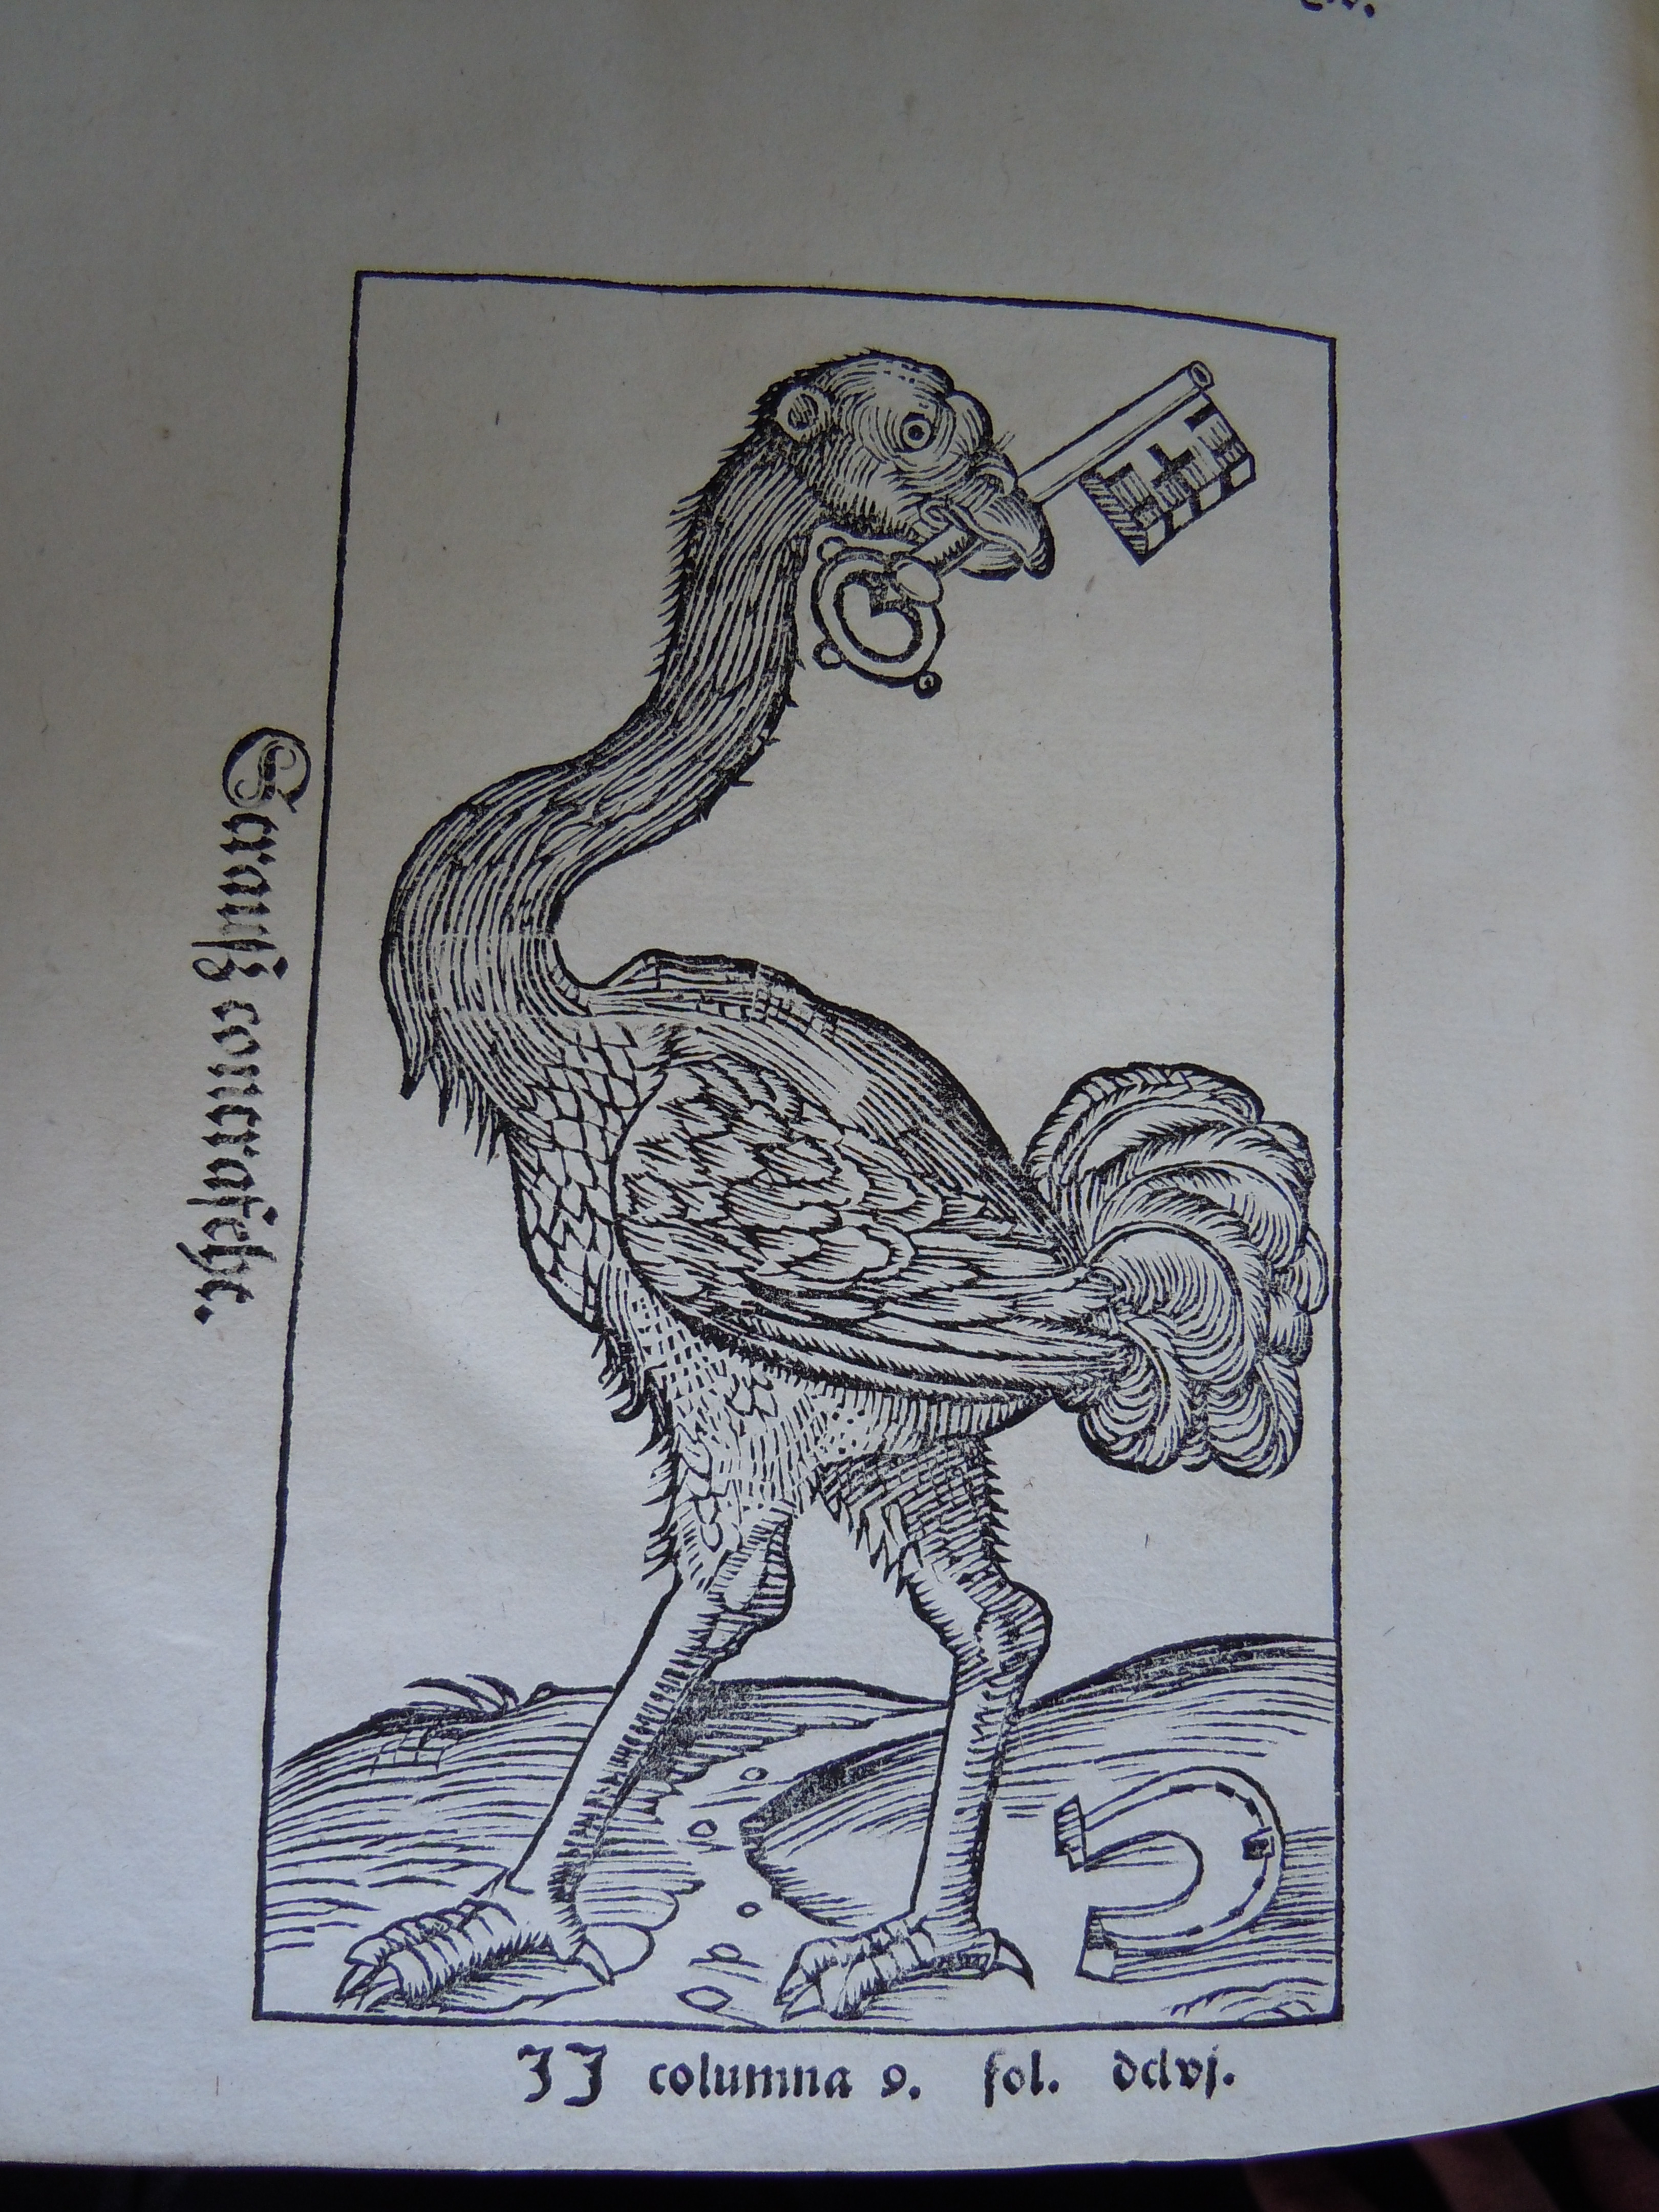 BT3.187.1(2), opp. p. dcxxxi, Sebastian Münster’s Cosmographia (1544)